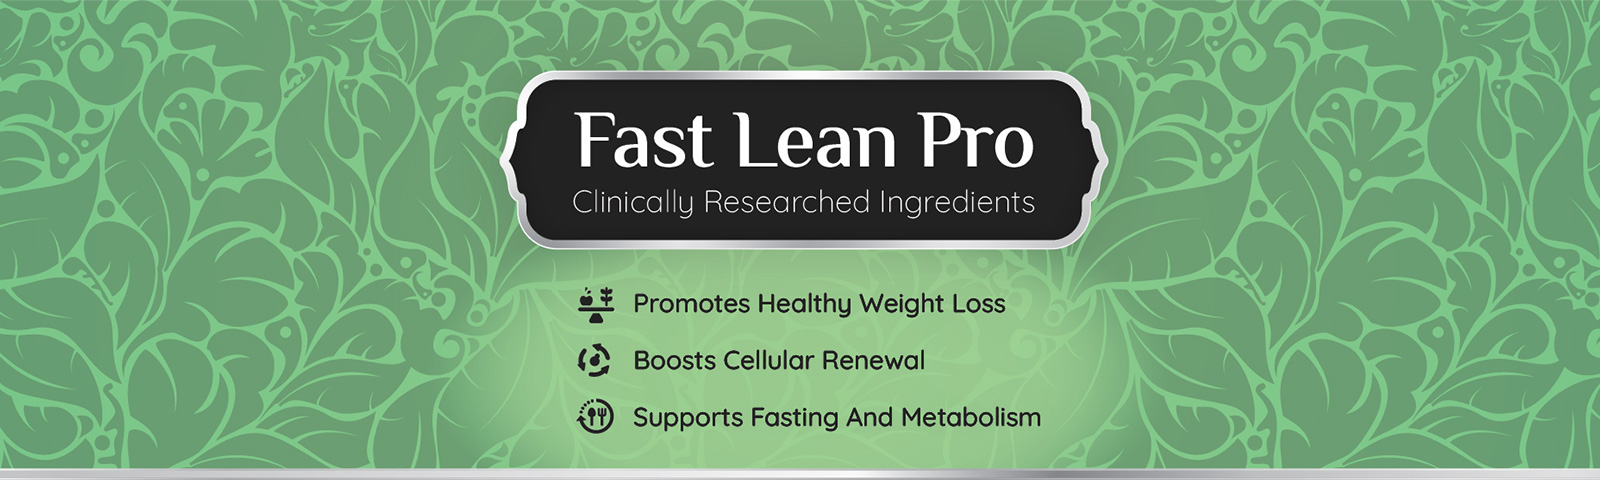 Fast Lean Pro complex